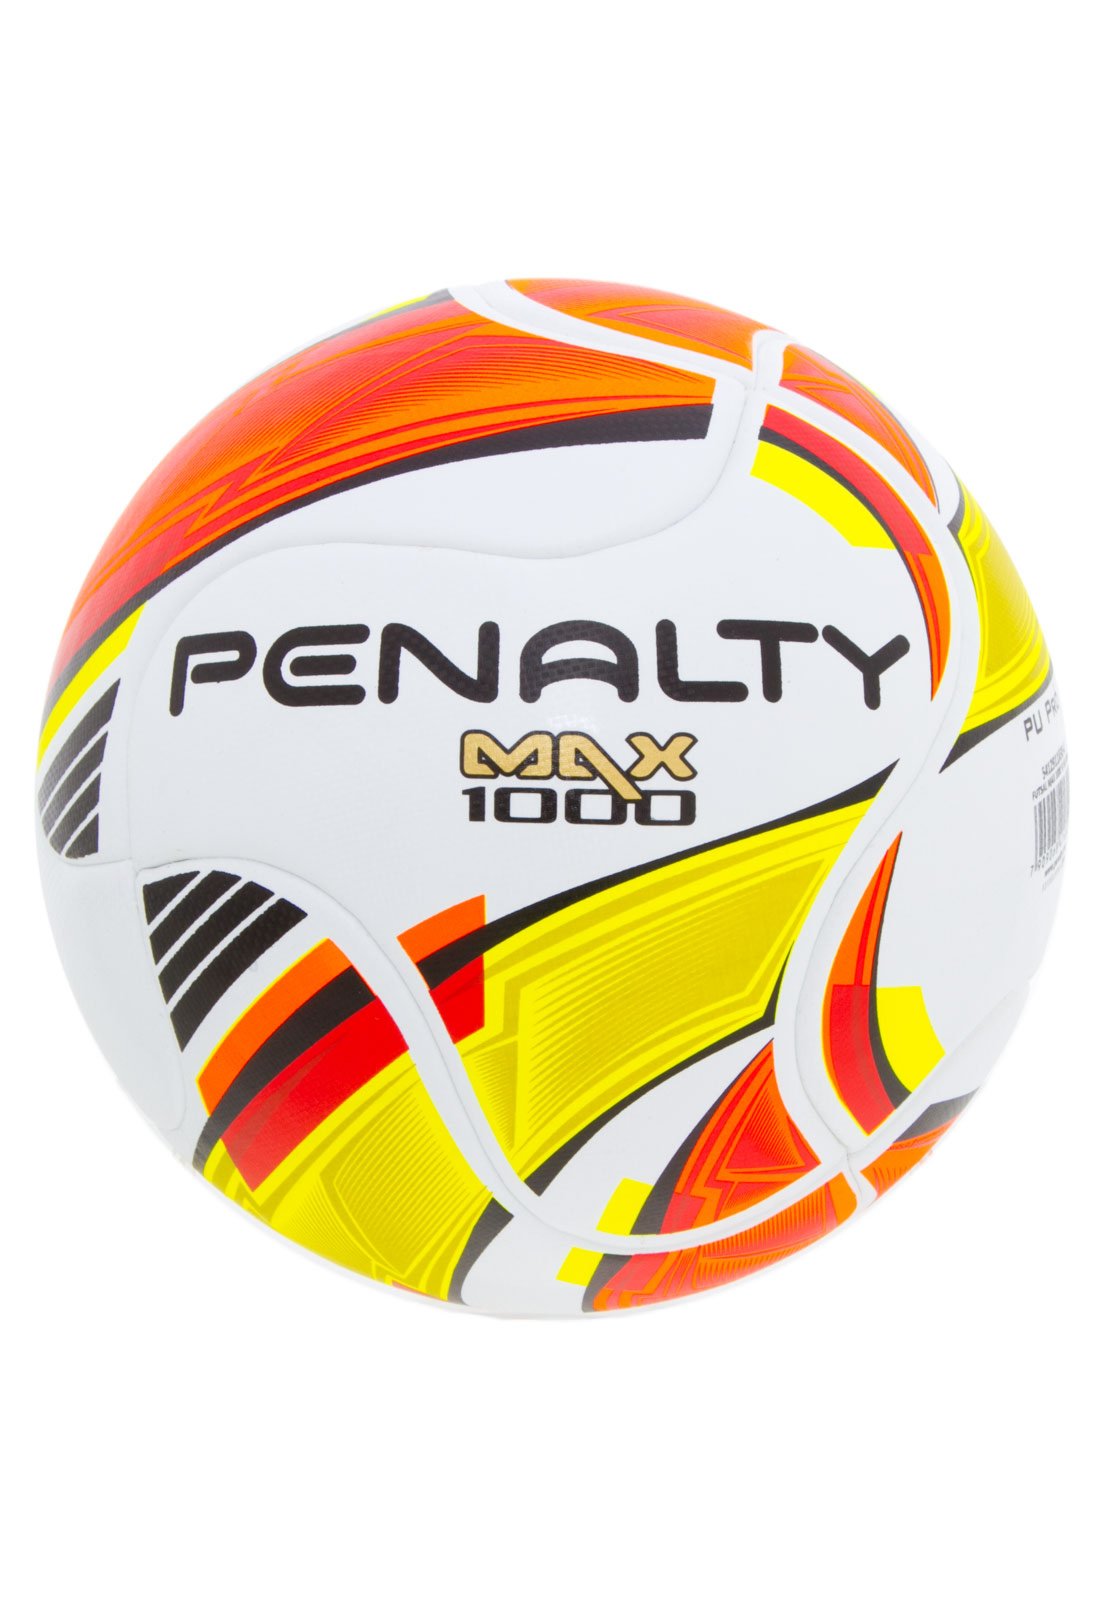 Bola Futsal Max 1000 vii Penalty em Promoção na Americanas